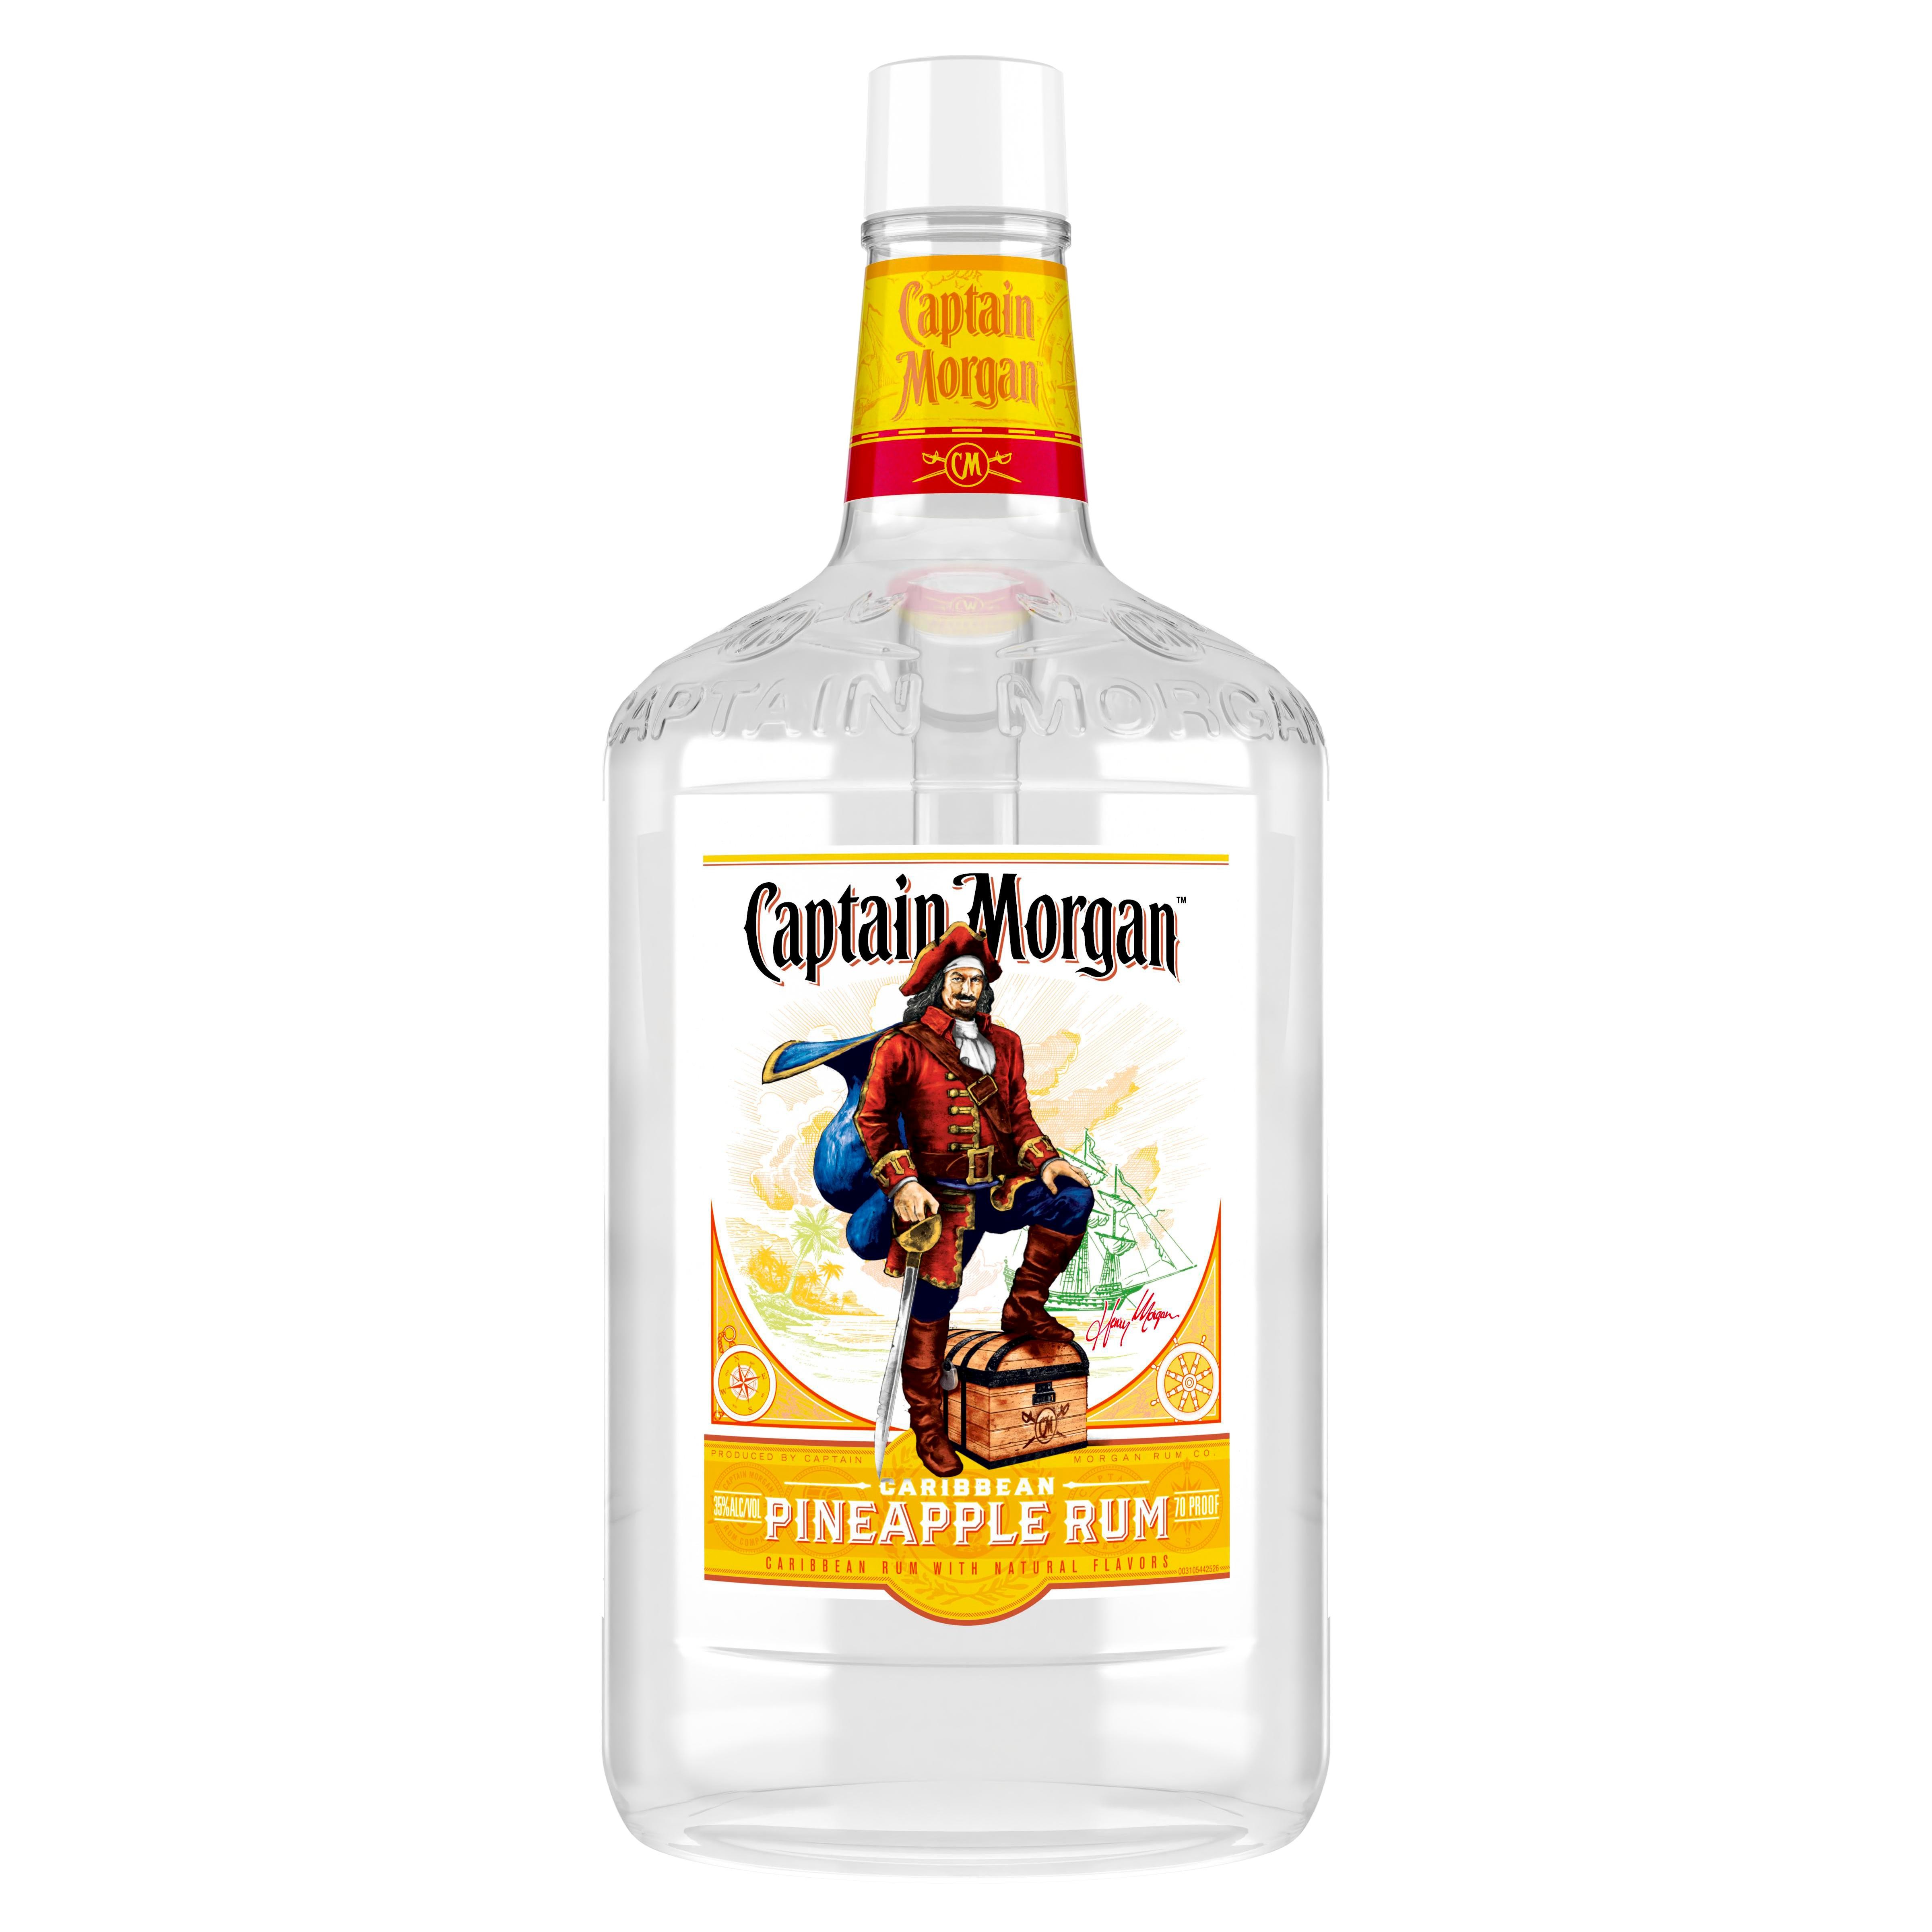 Captain Morgan Pineapple Rum, 1.75 L (70 Proof)